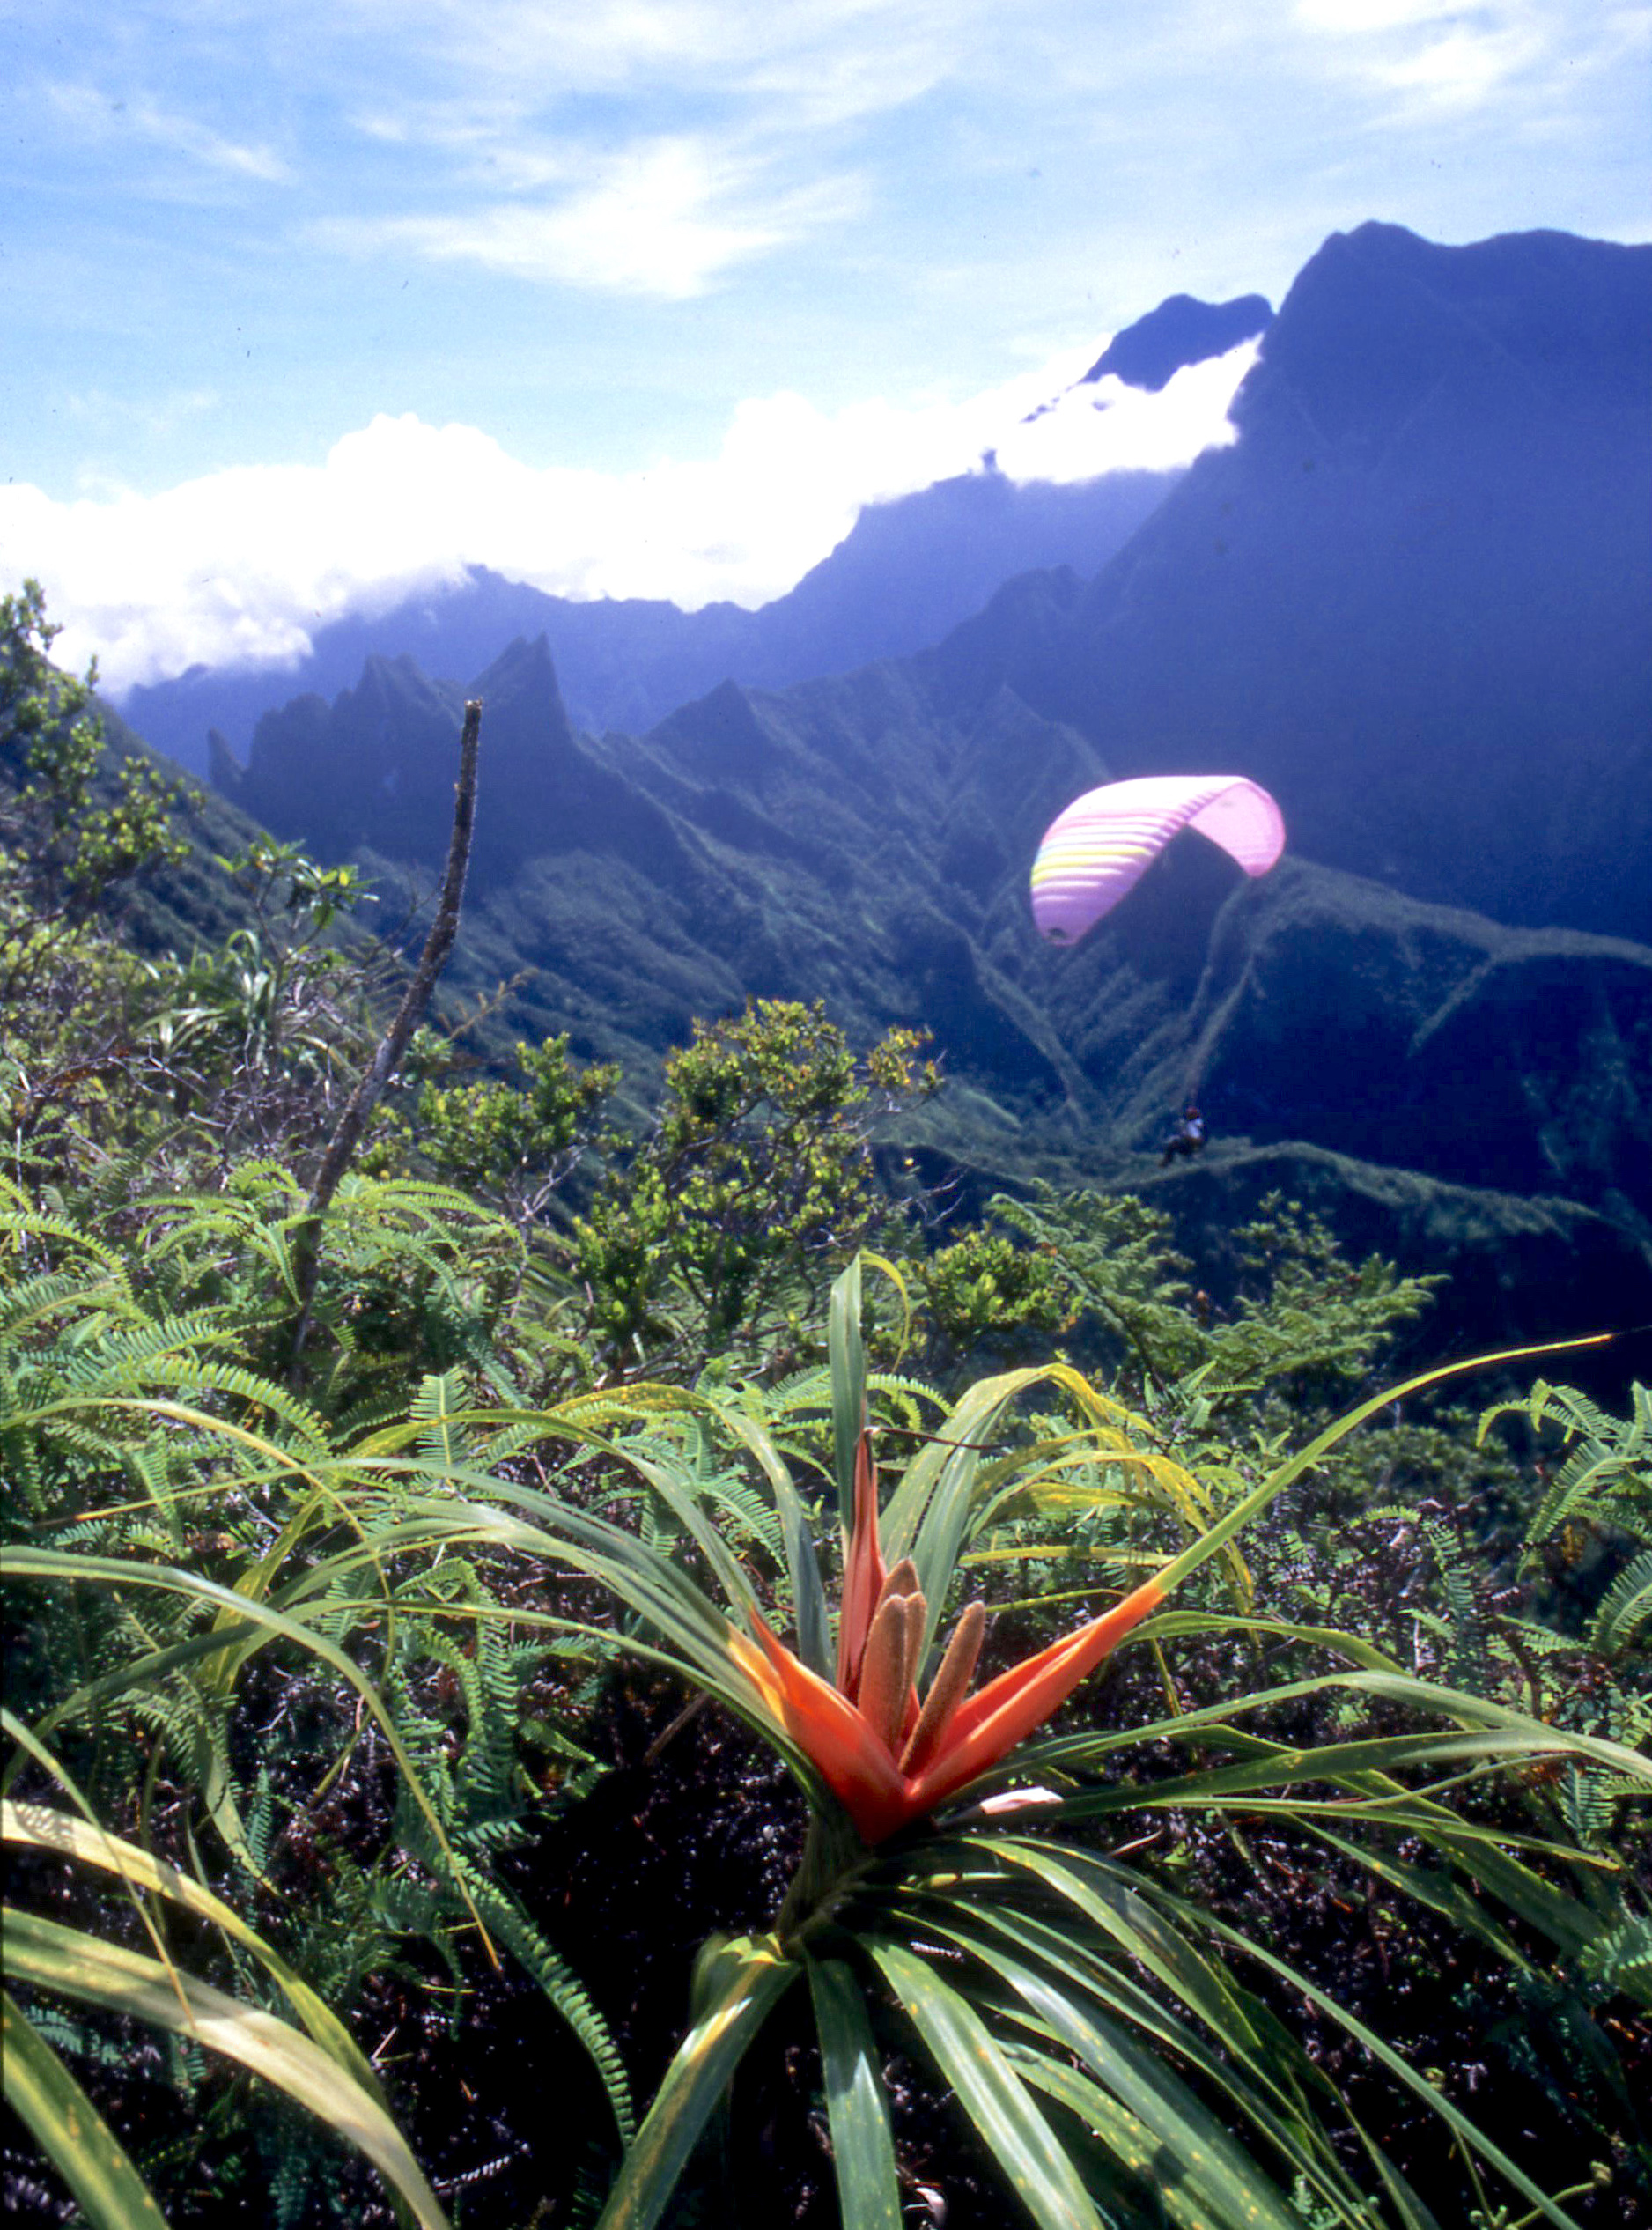 Les dix plus belles randonnées de Tahiti